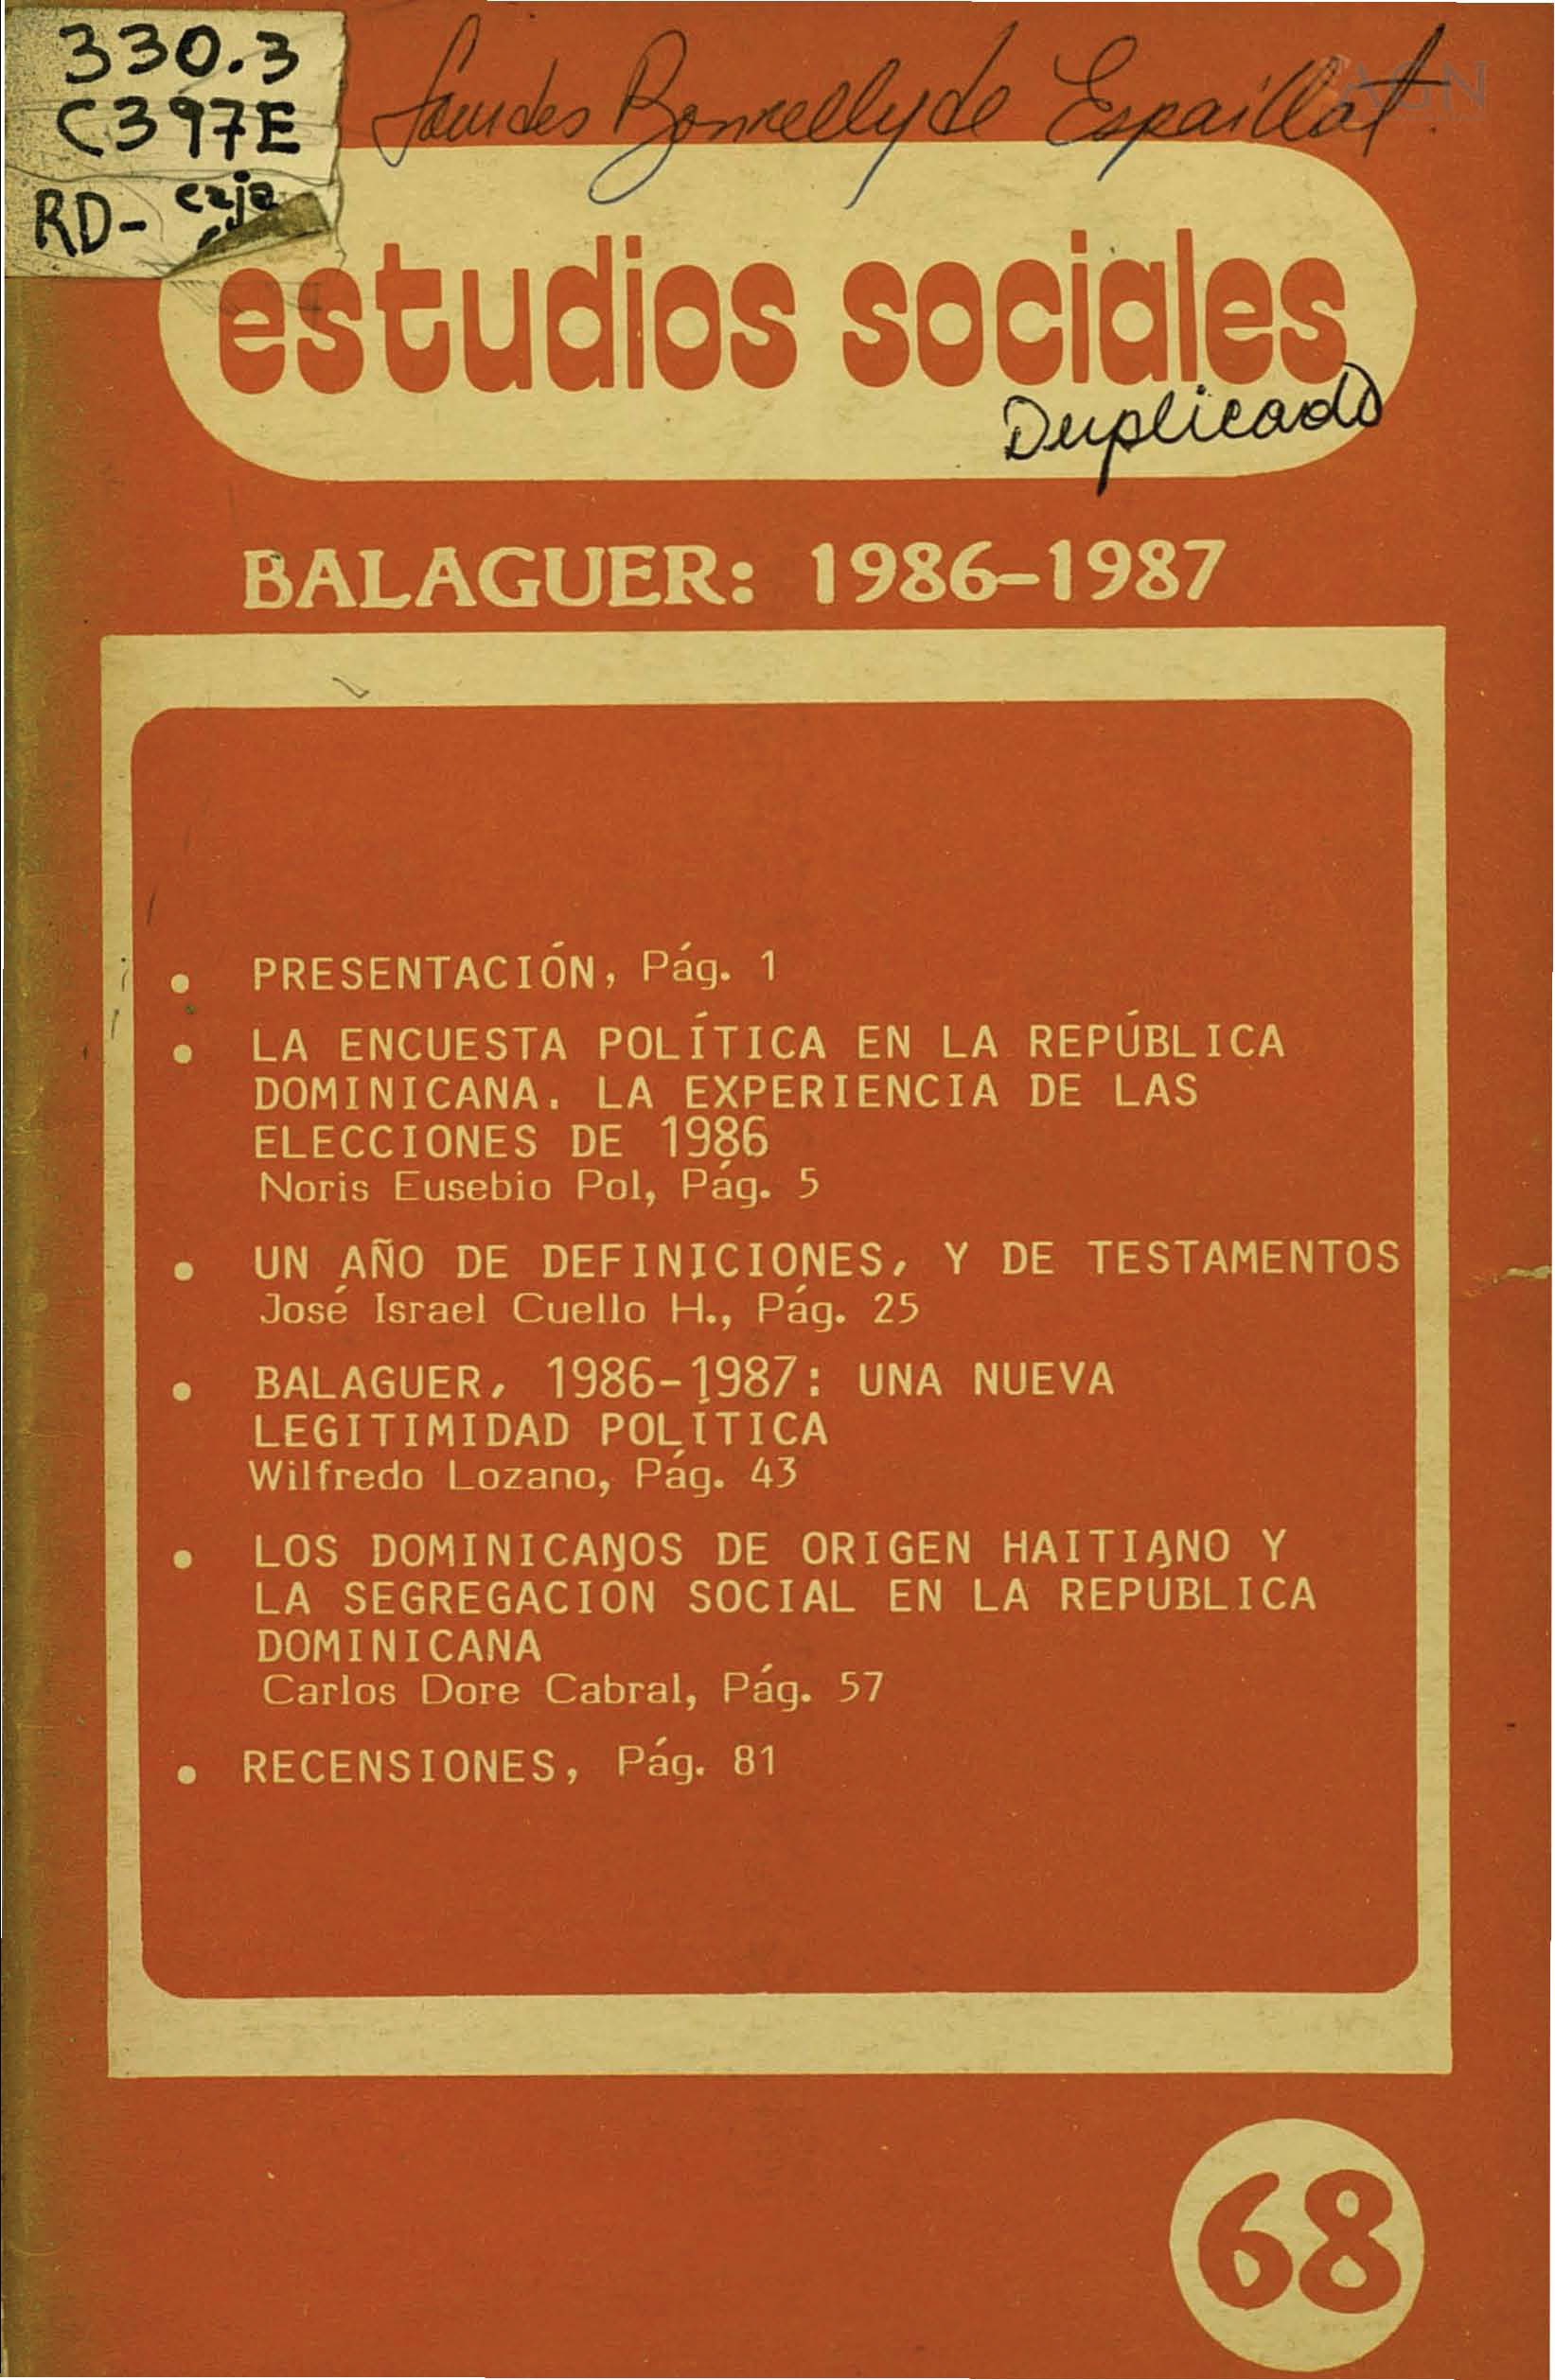 						Ver Vol. 20 Núm. 68 (1987): Balaguer: 1986-1987
					